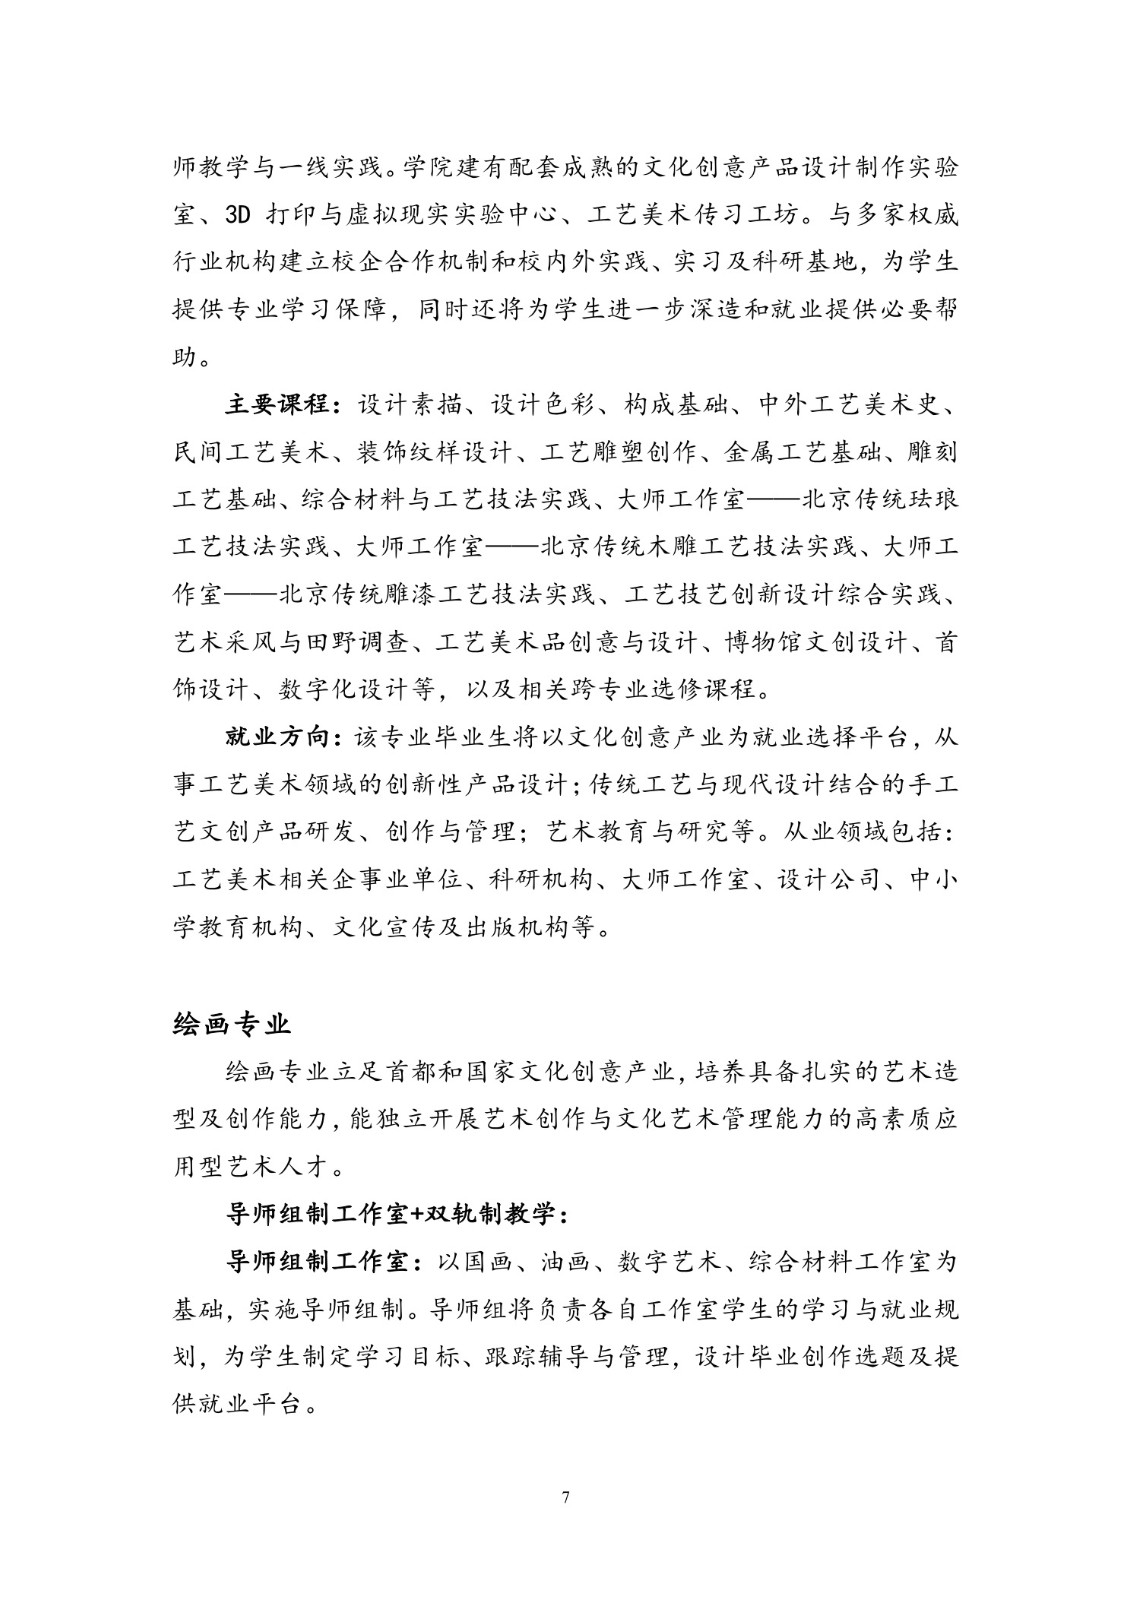 北京联合大学2018年艺术类招生简章20180103-page7 2.jpeg